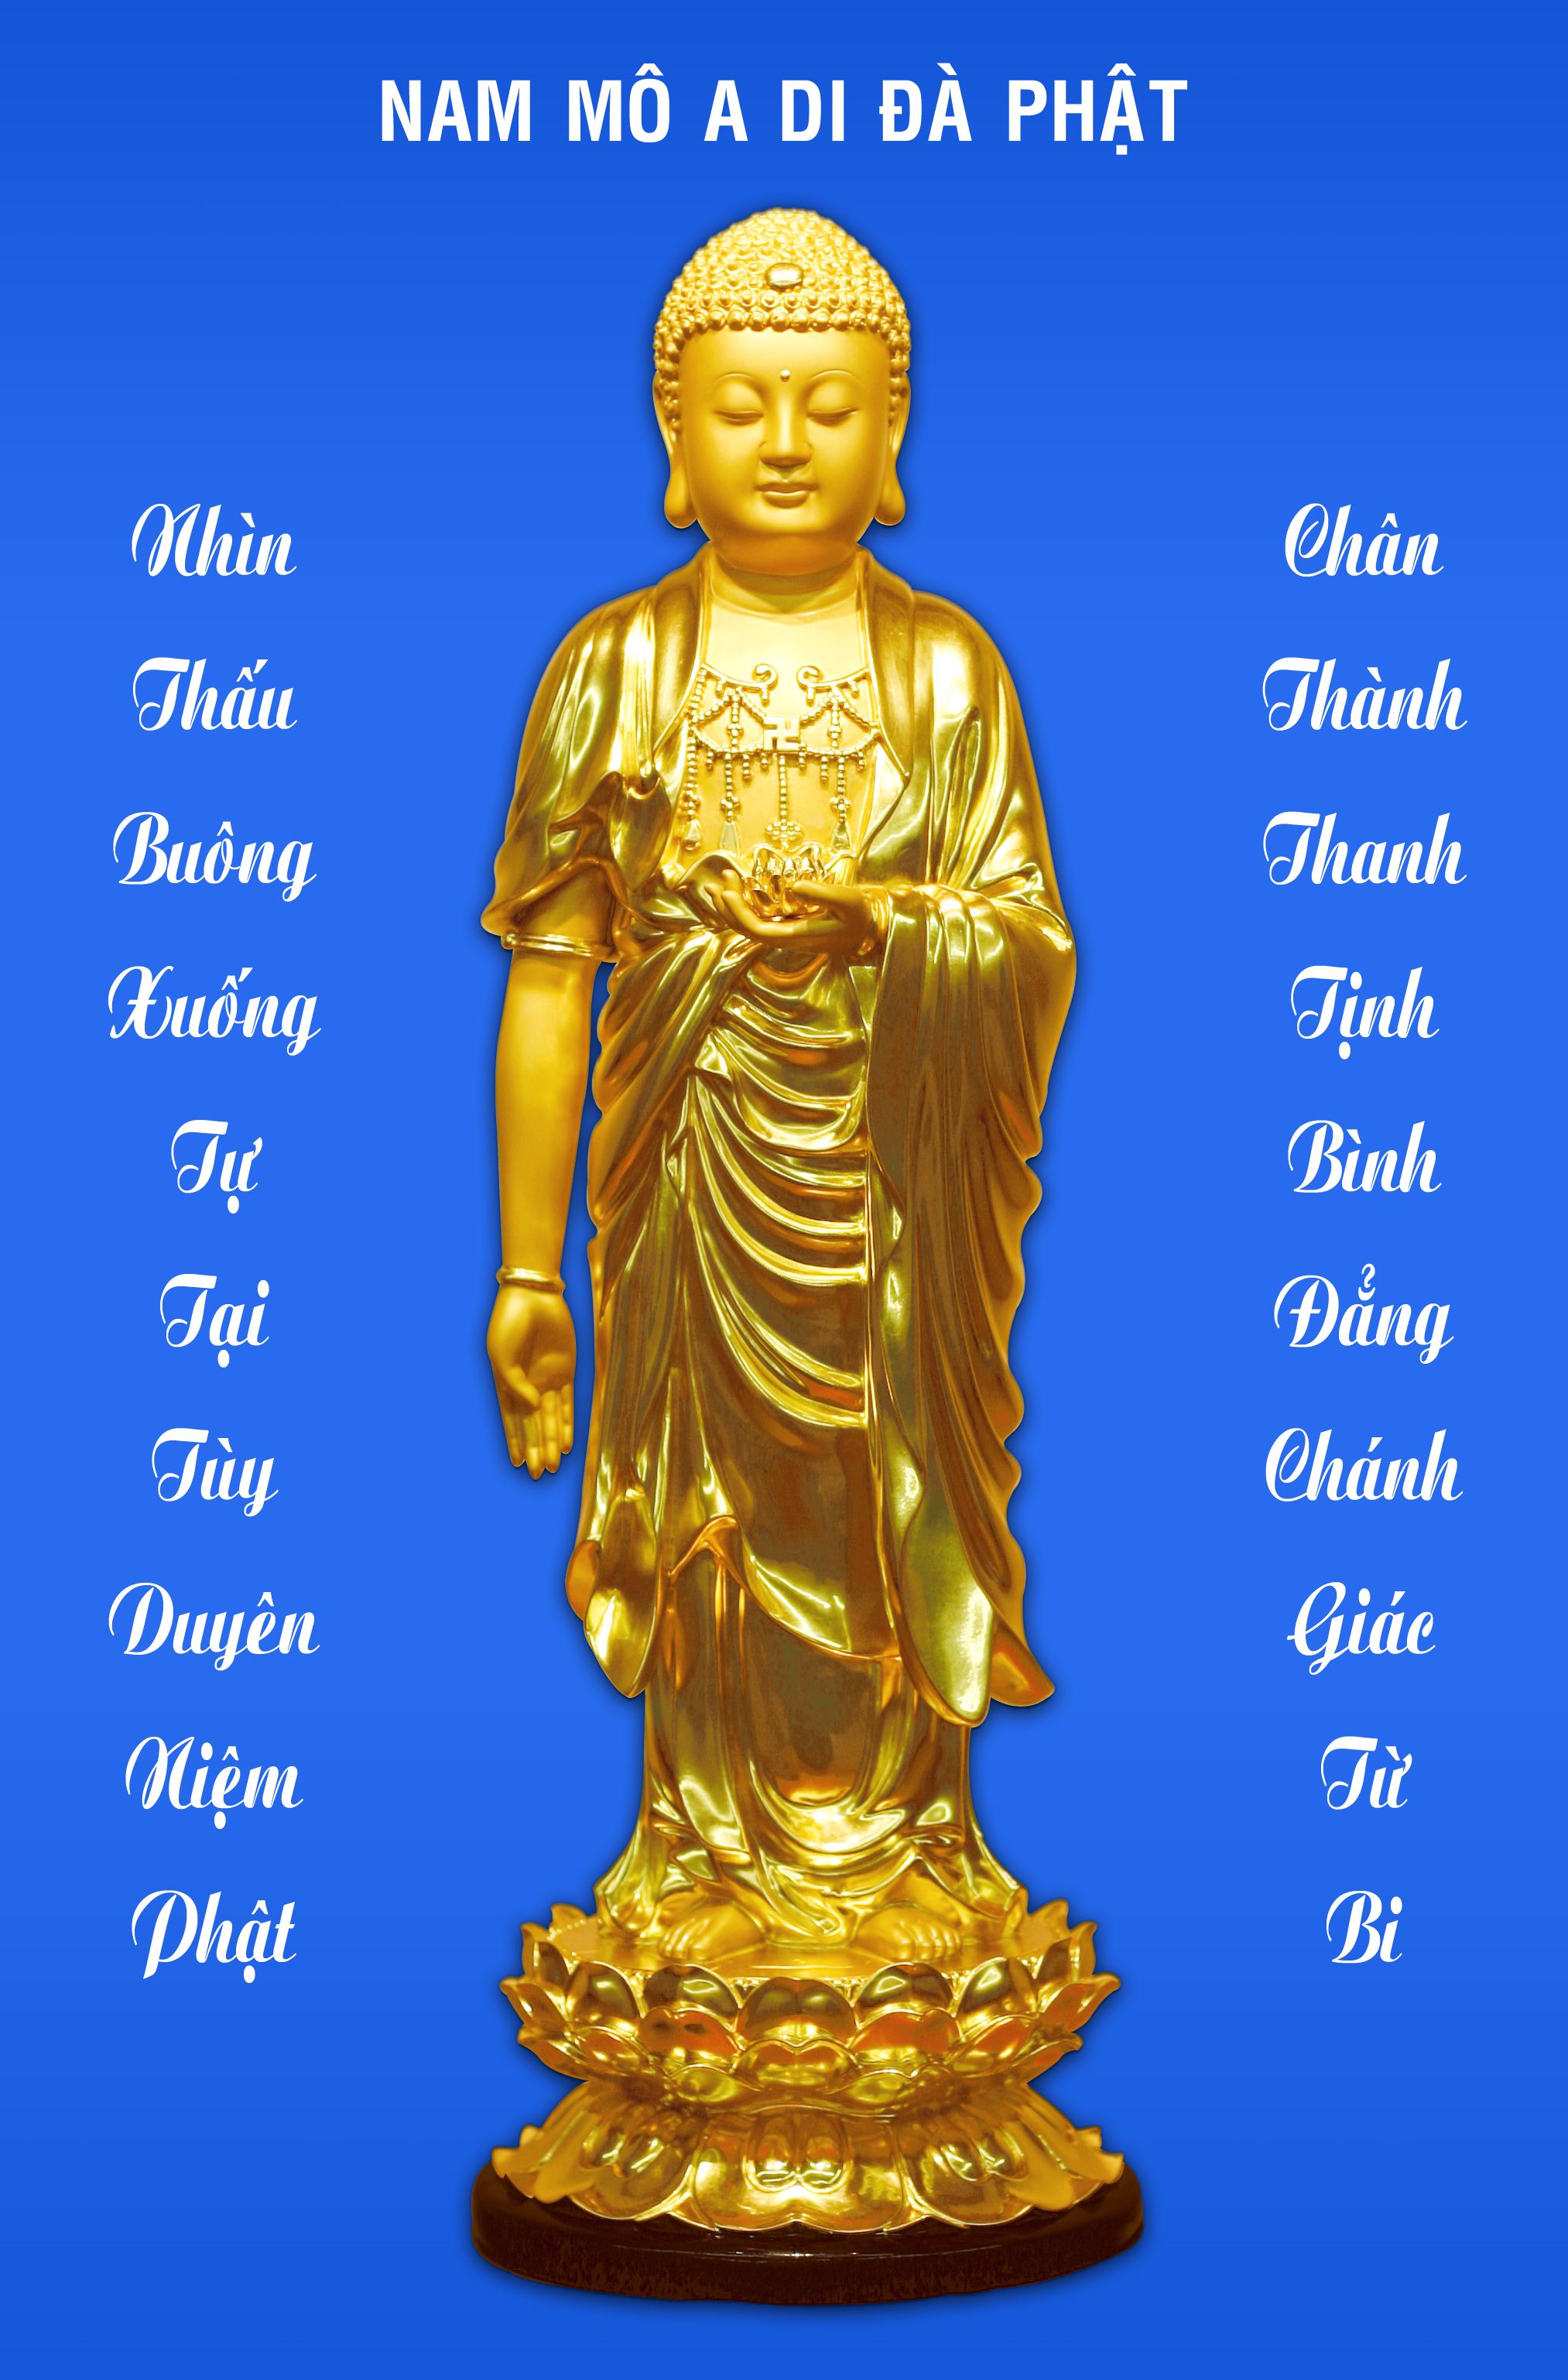 Hãy cùng ngắm nhìn hình ảnh đầy trang nghiêm của A Di Đà Phật trong không gian linh thiêng để cảm nhận sự thanh tịnh trong tâm hồn.